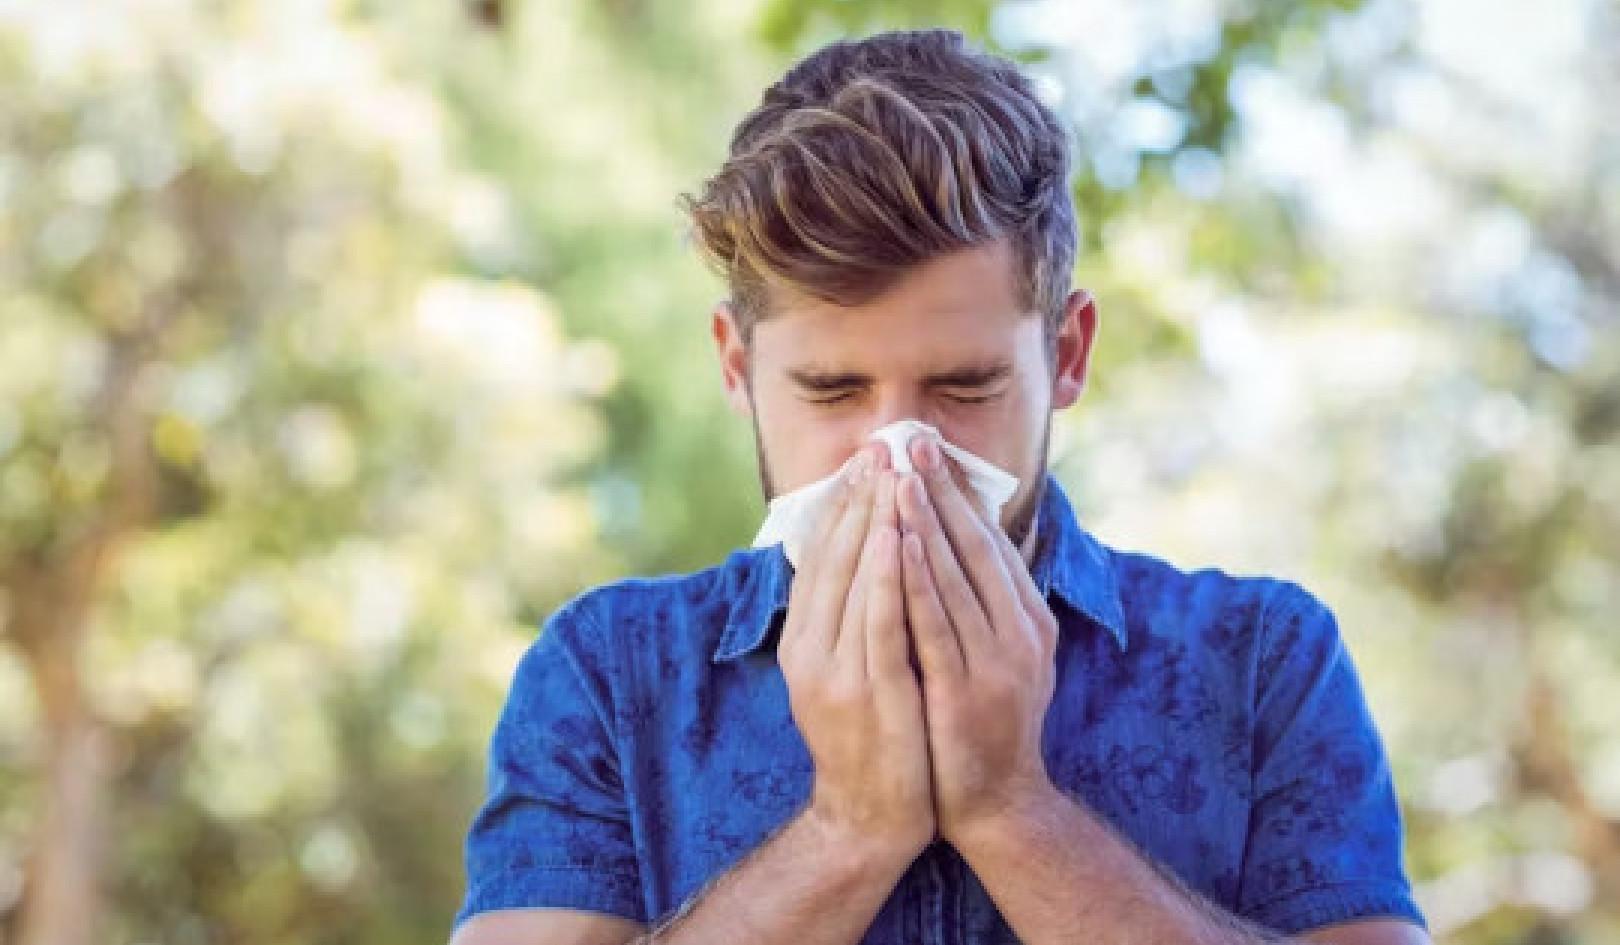 Τα συμπτώματα του αλλεργικού πυρετού μειώνονται από τα προβιοτικά